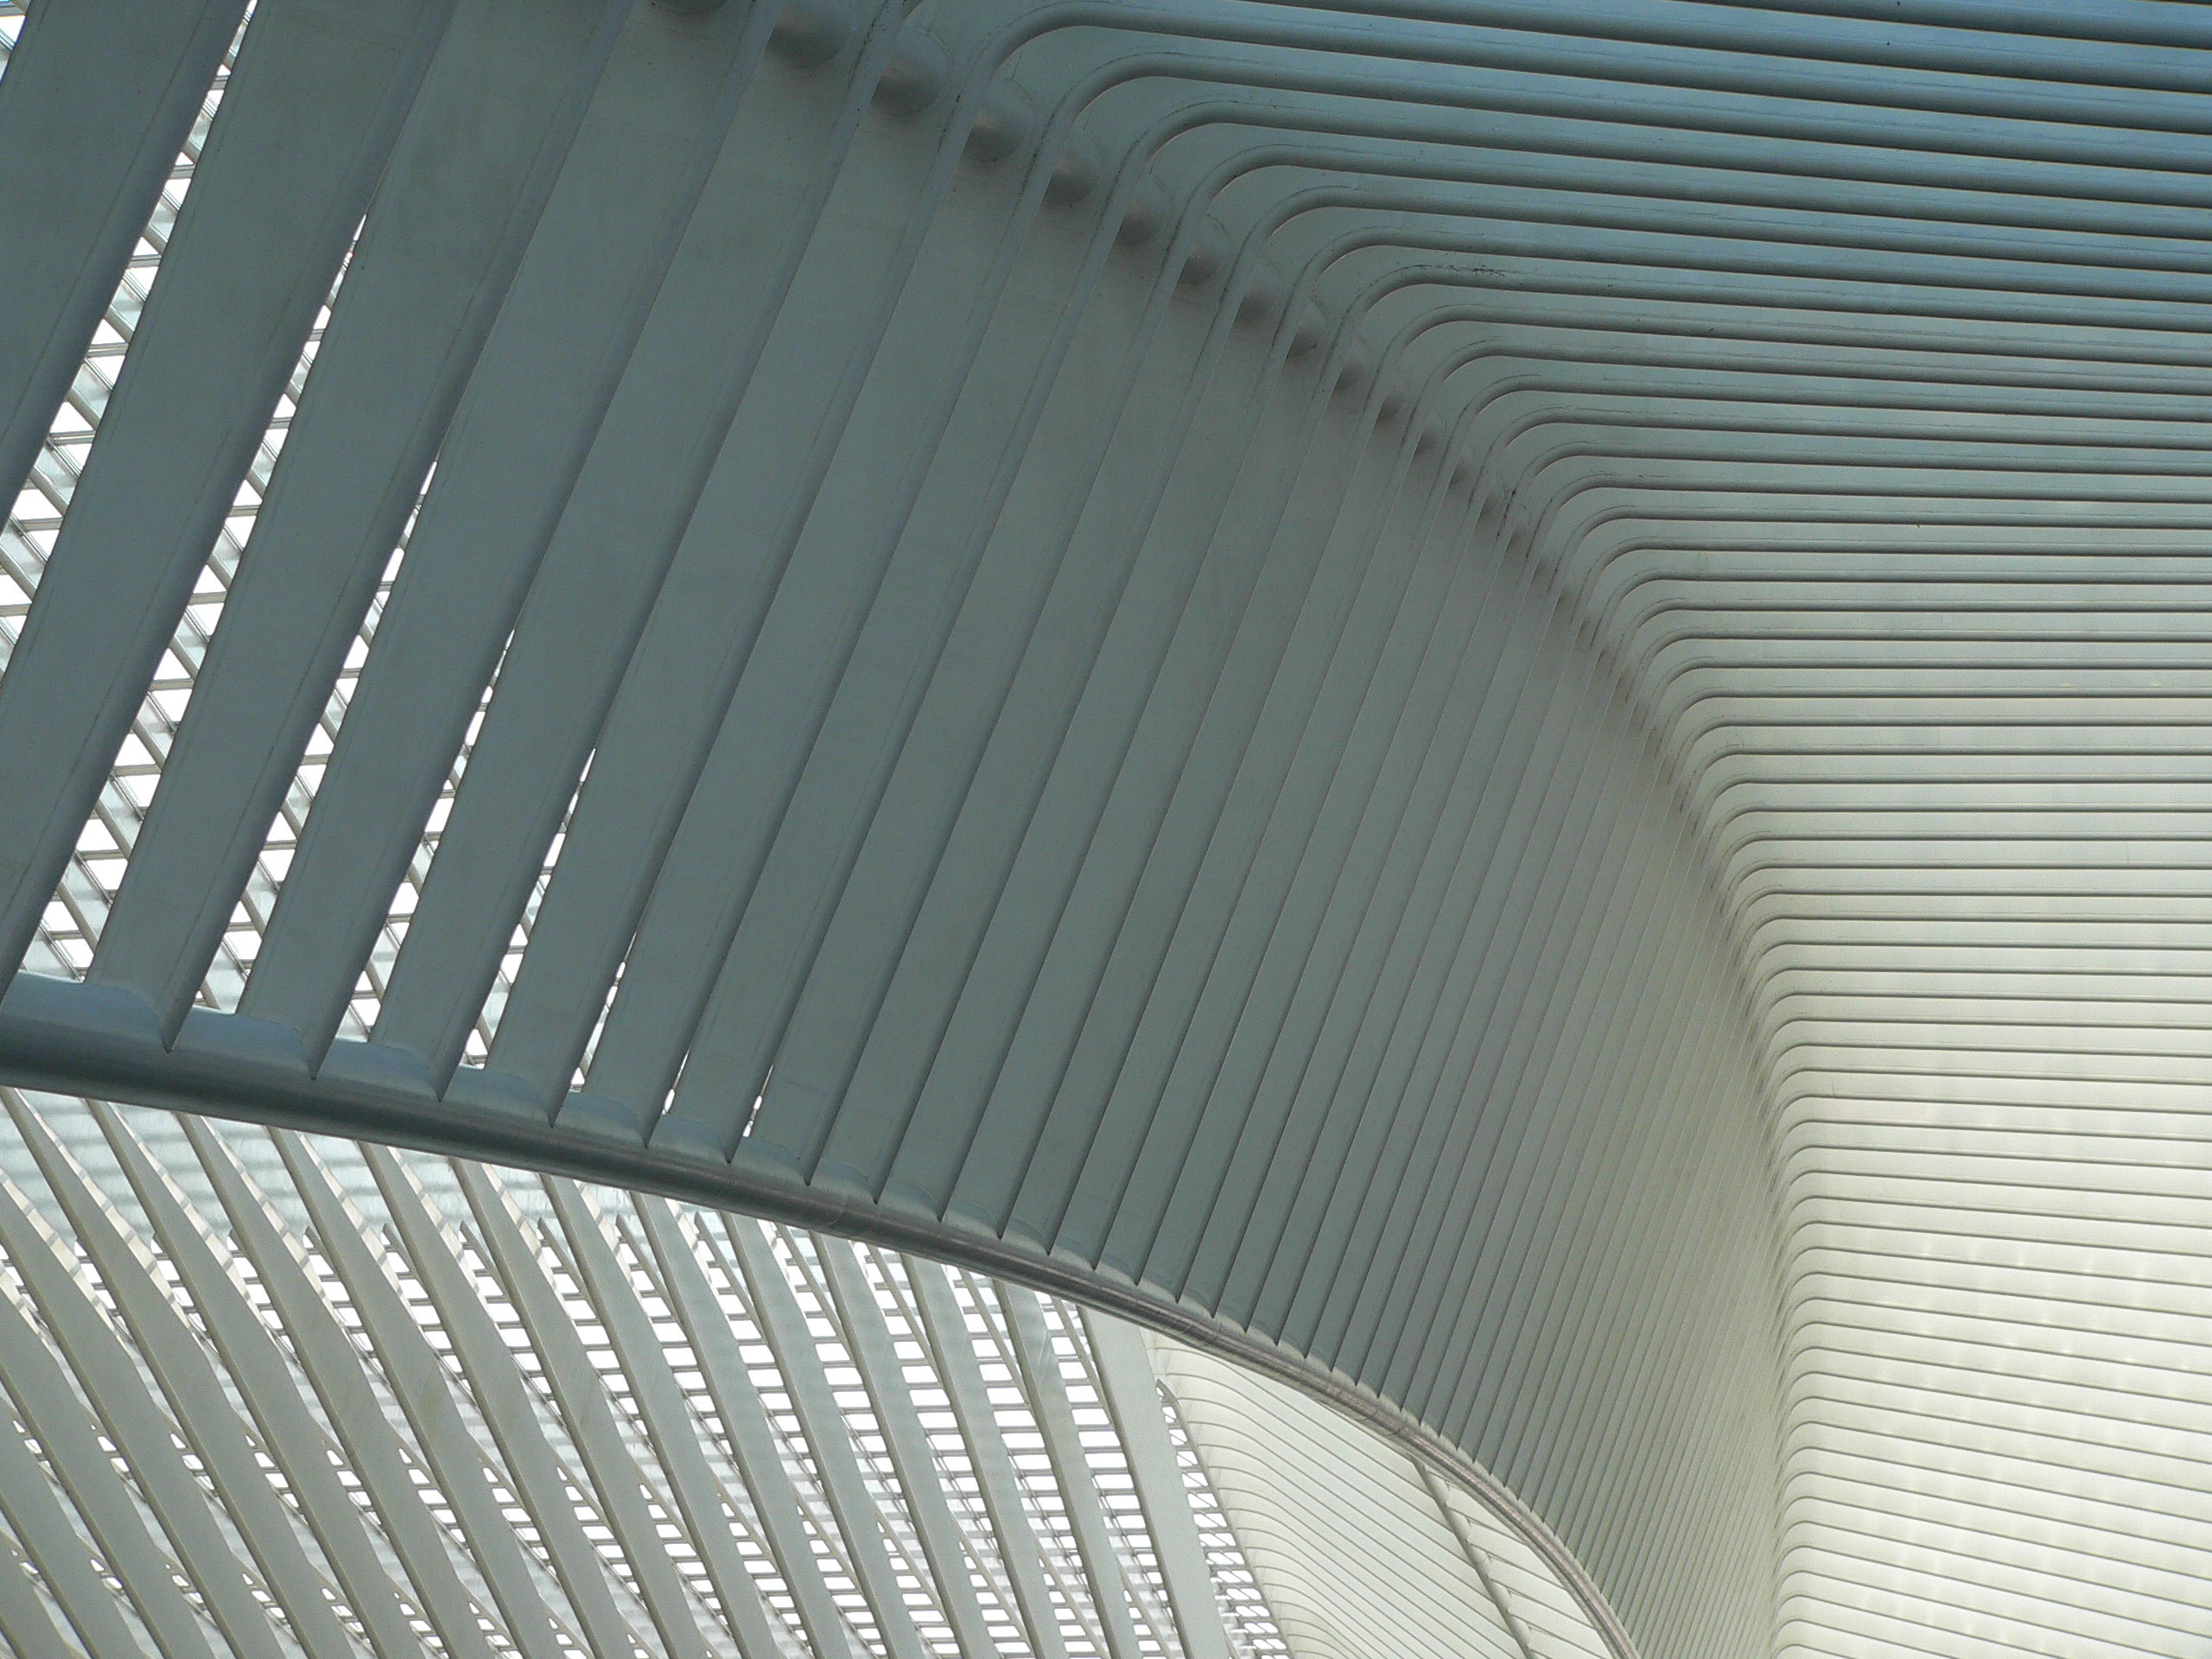 Diese Rippen sind ein typisches Stilmittel vieler Calatrava-Bauten